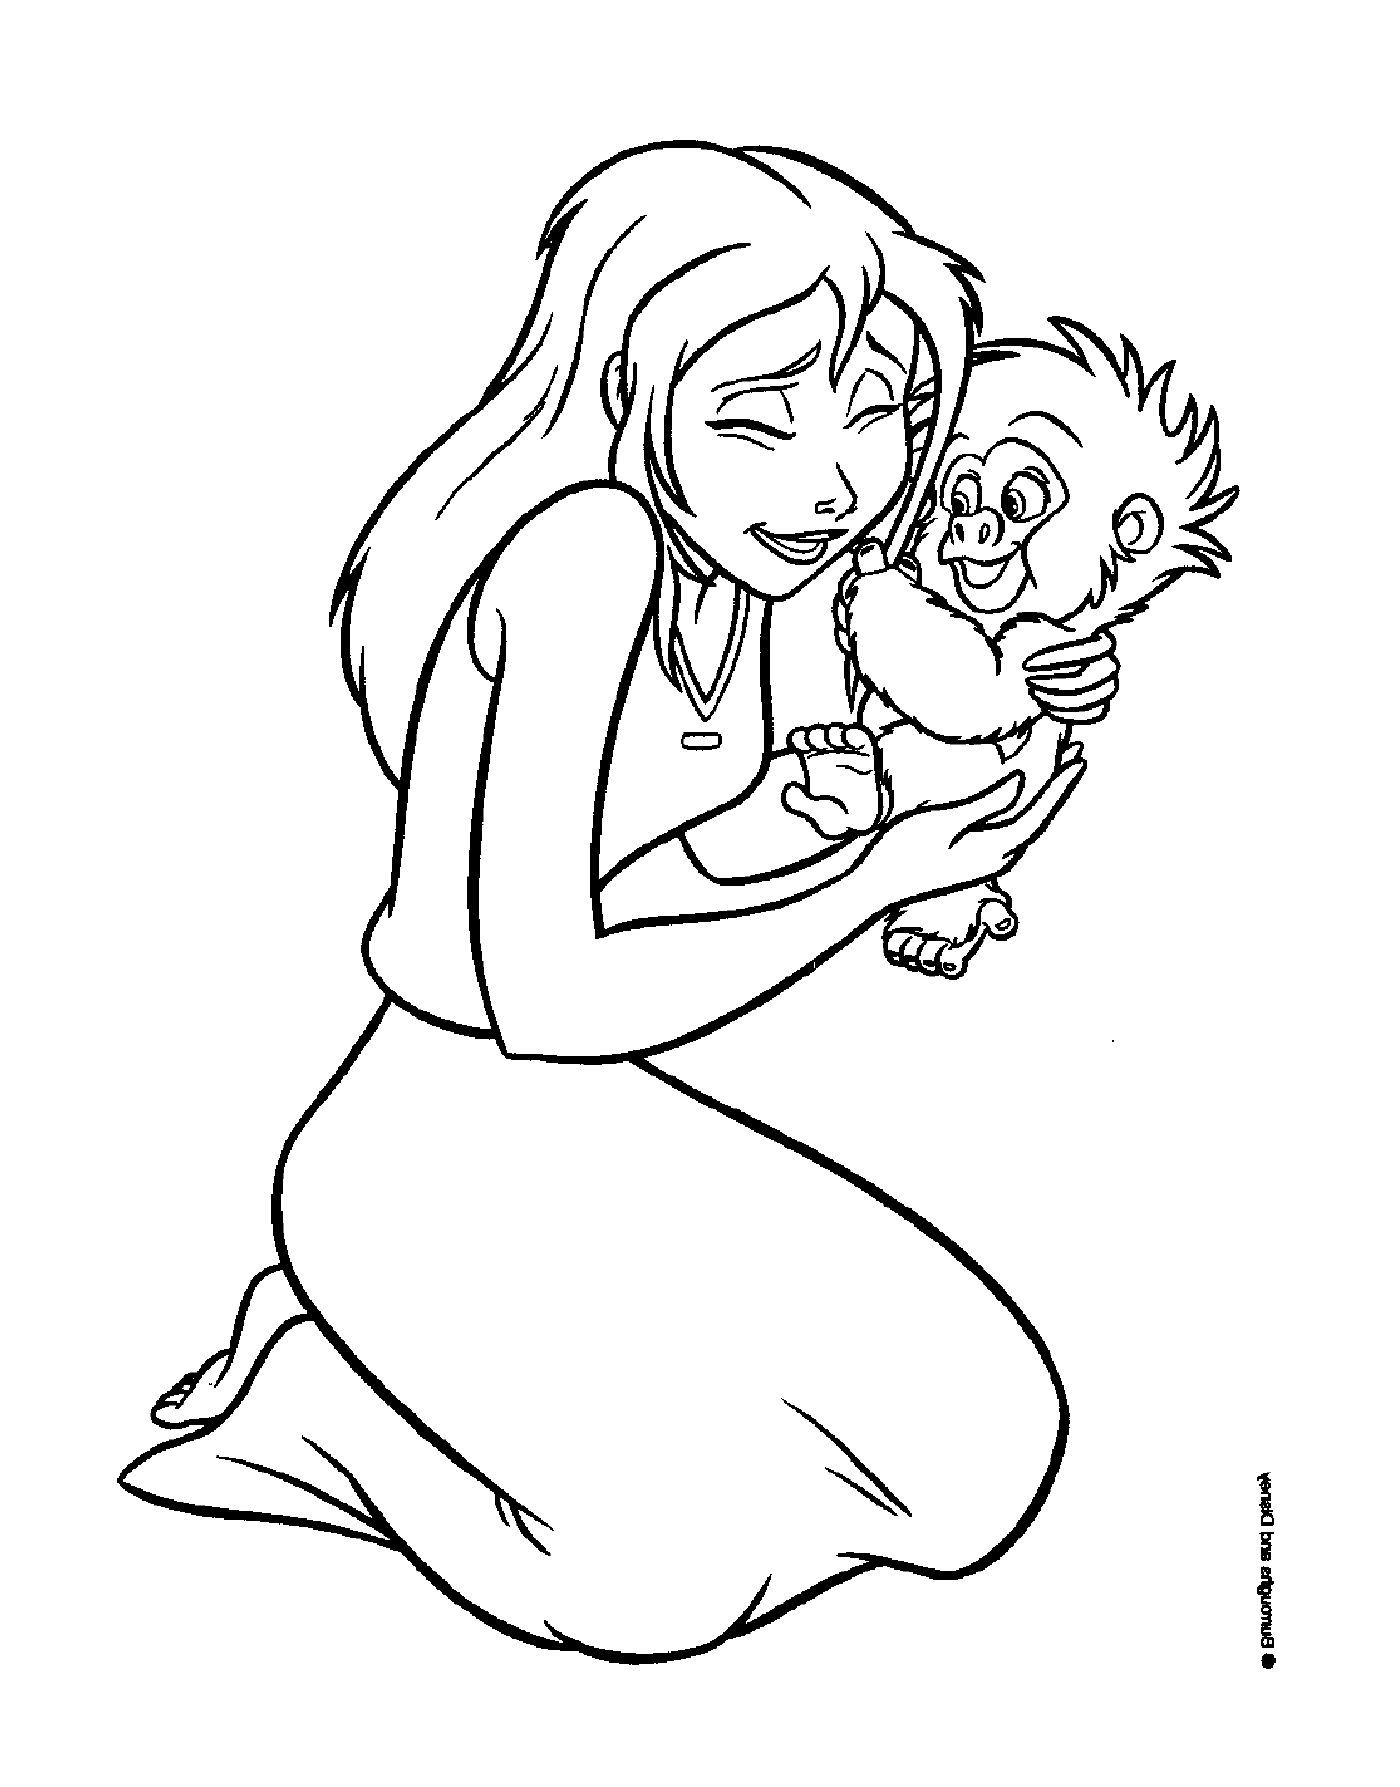  Frau, die einen Babyaffen in ihren Armen hält 